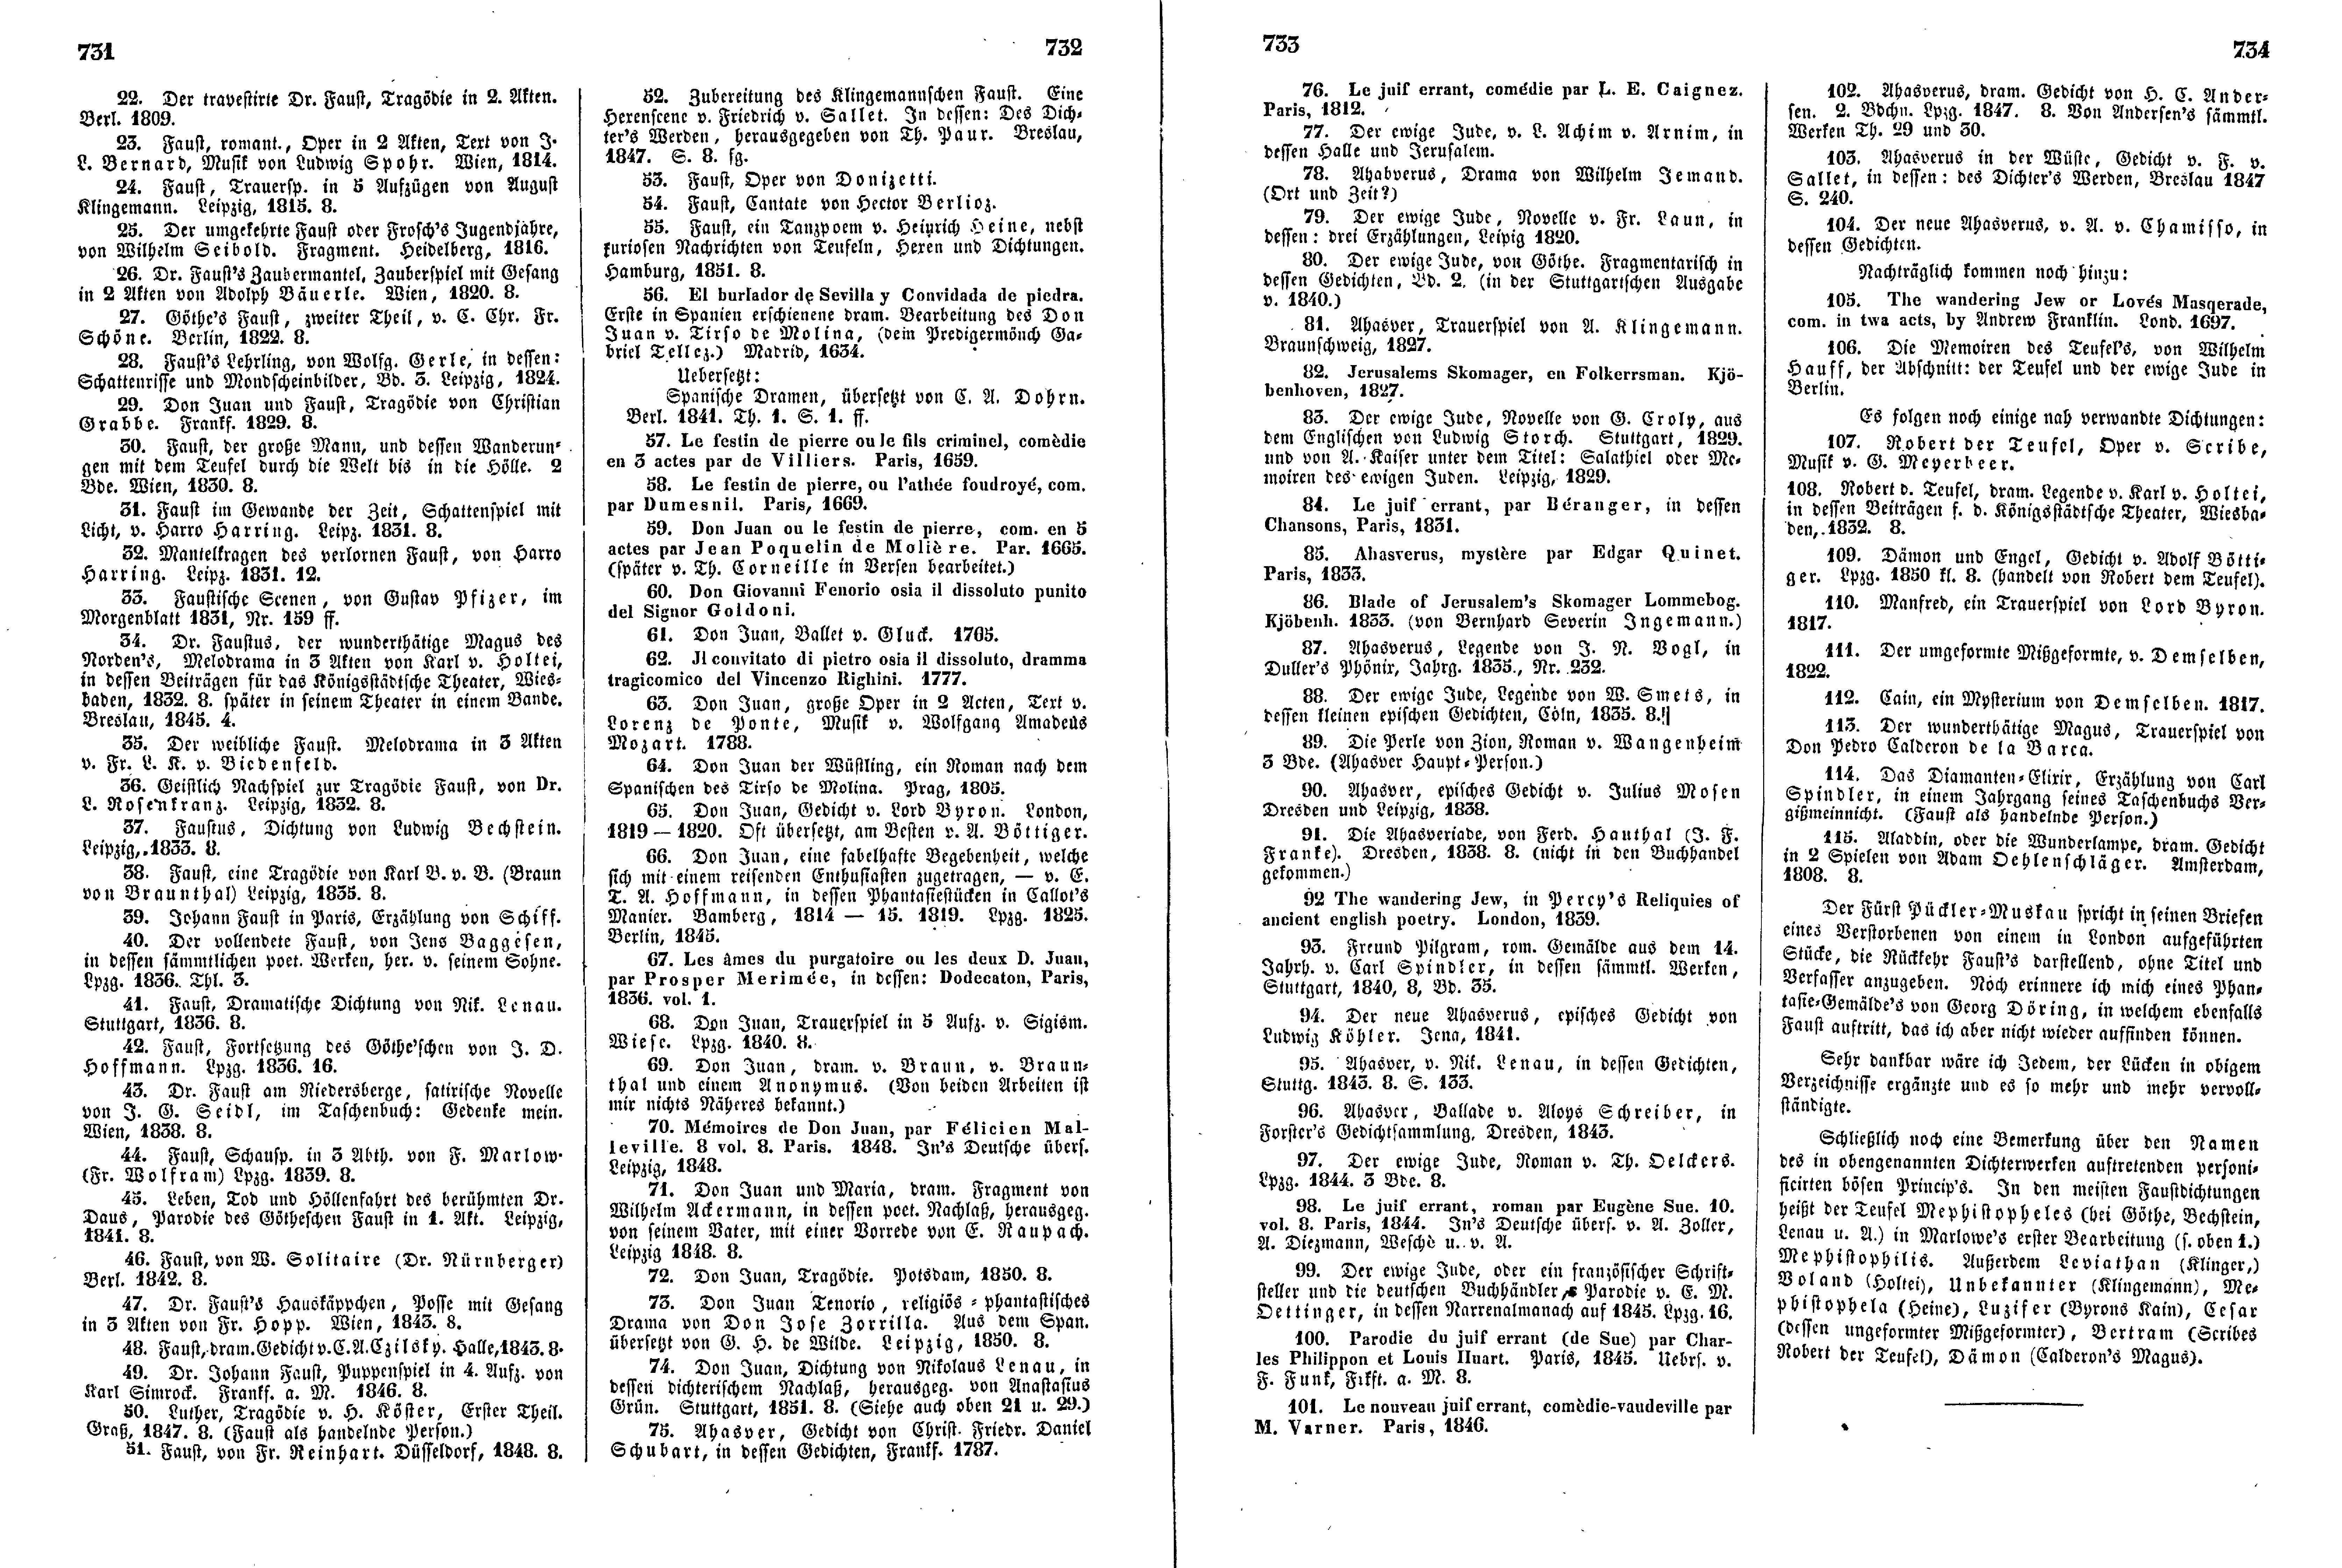 Das Inland [18] (1853) | 193. (731-734) Haupttext